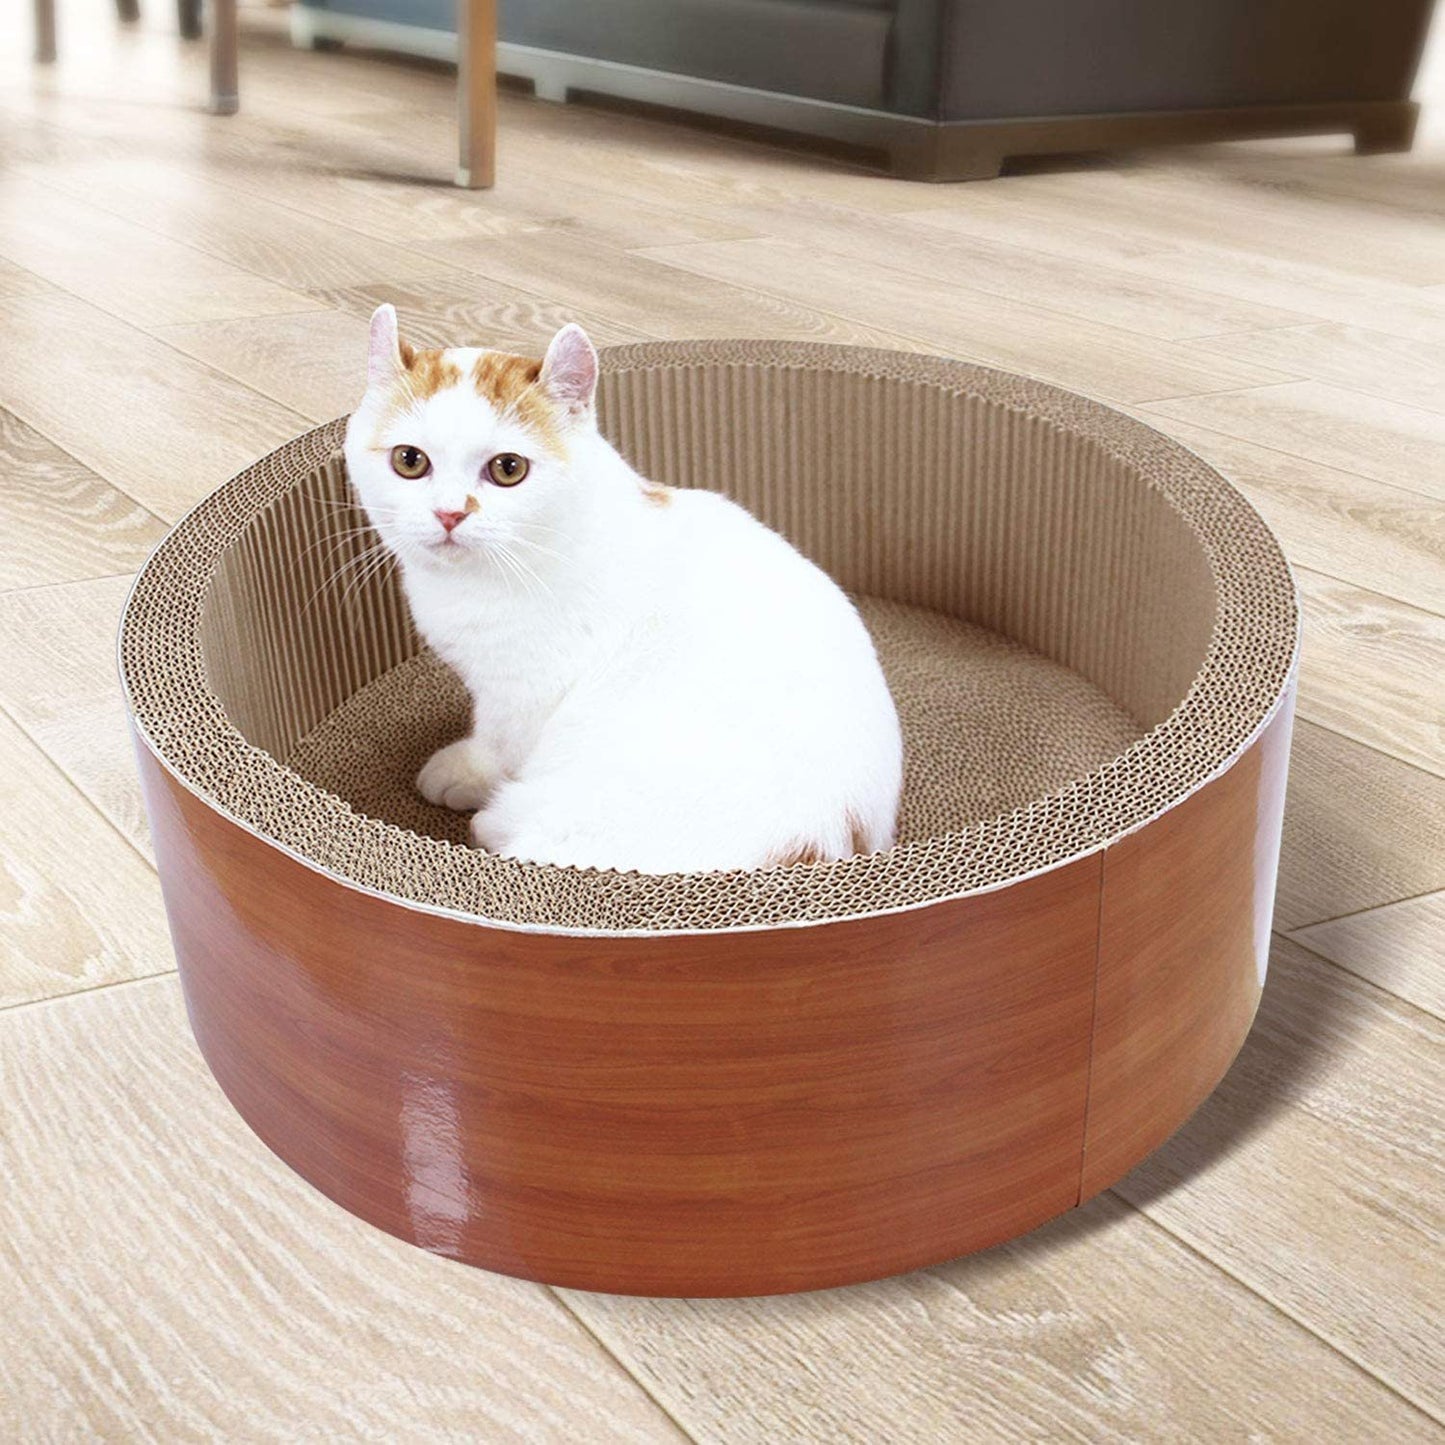 ScratchMe Cat Scratcher Post & Board, Cat Scratching Pad, Durable Scratcher Prevents Furniture Damage, black marble